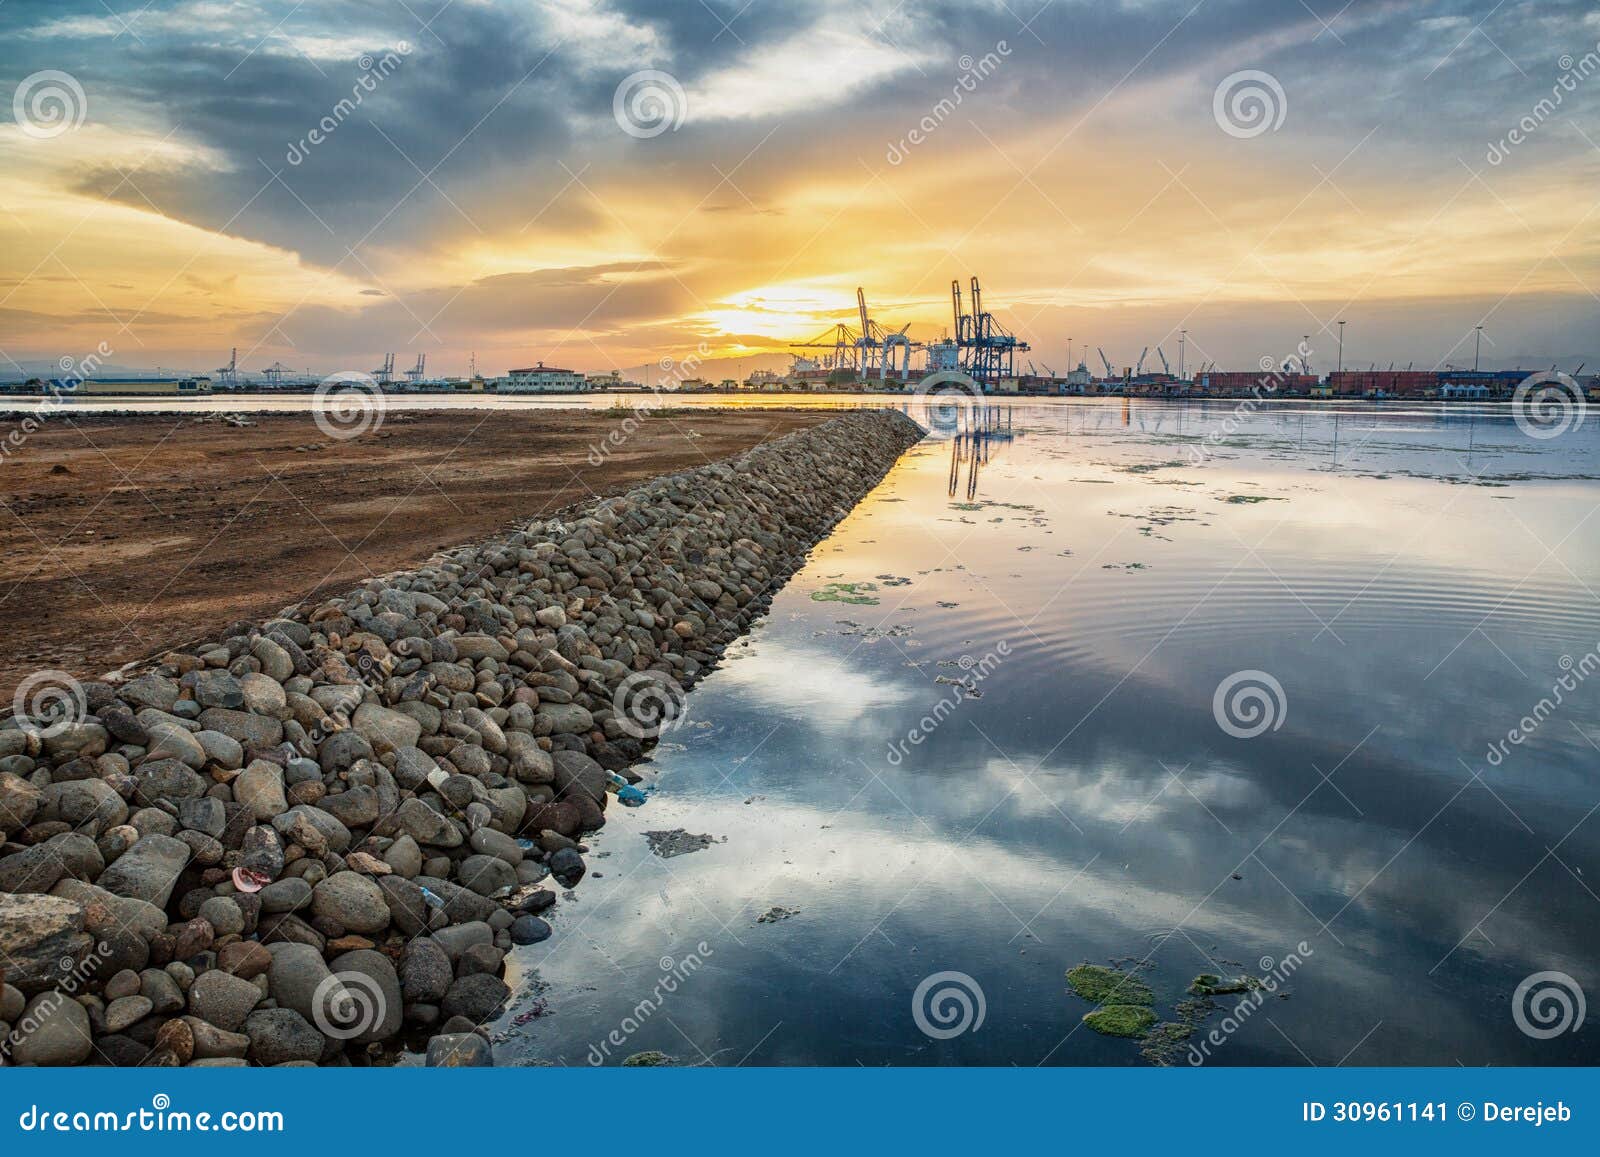 shores near djibouti port